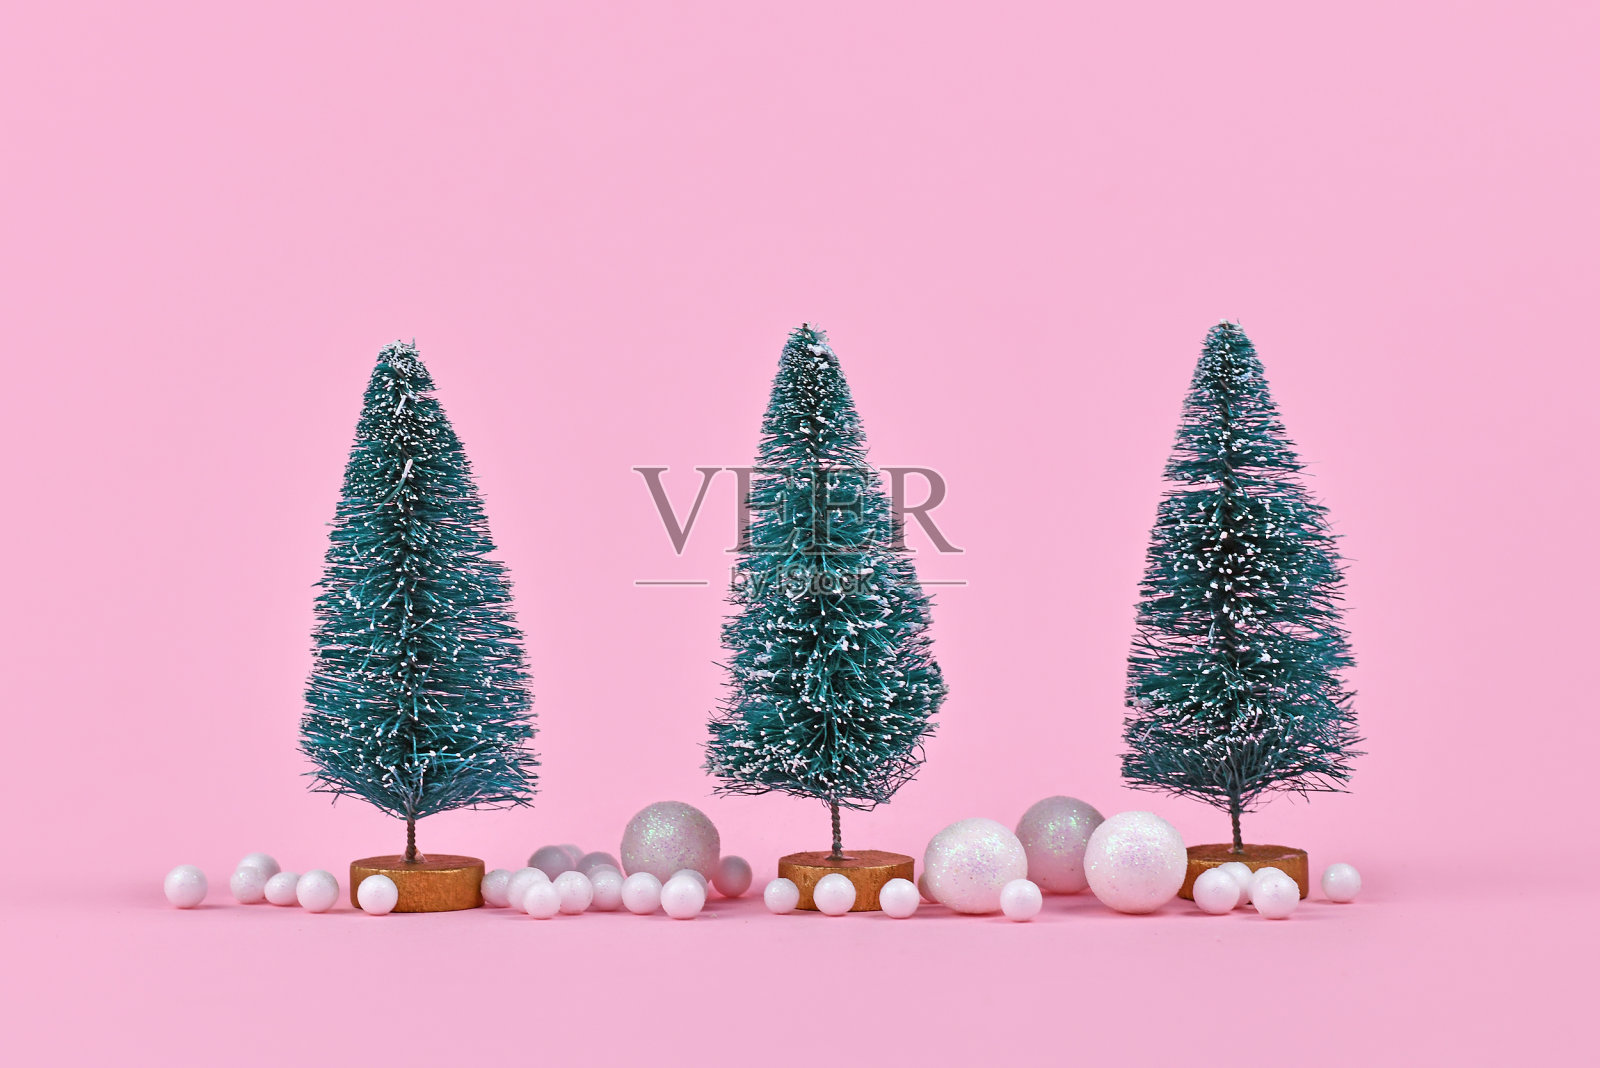 三棵小圣诞树被粉红色背景上的白色雪球装饰环绕着照片摄影图片